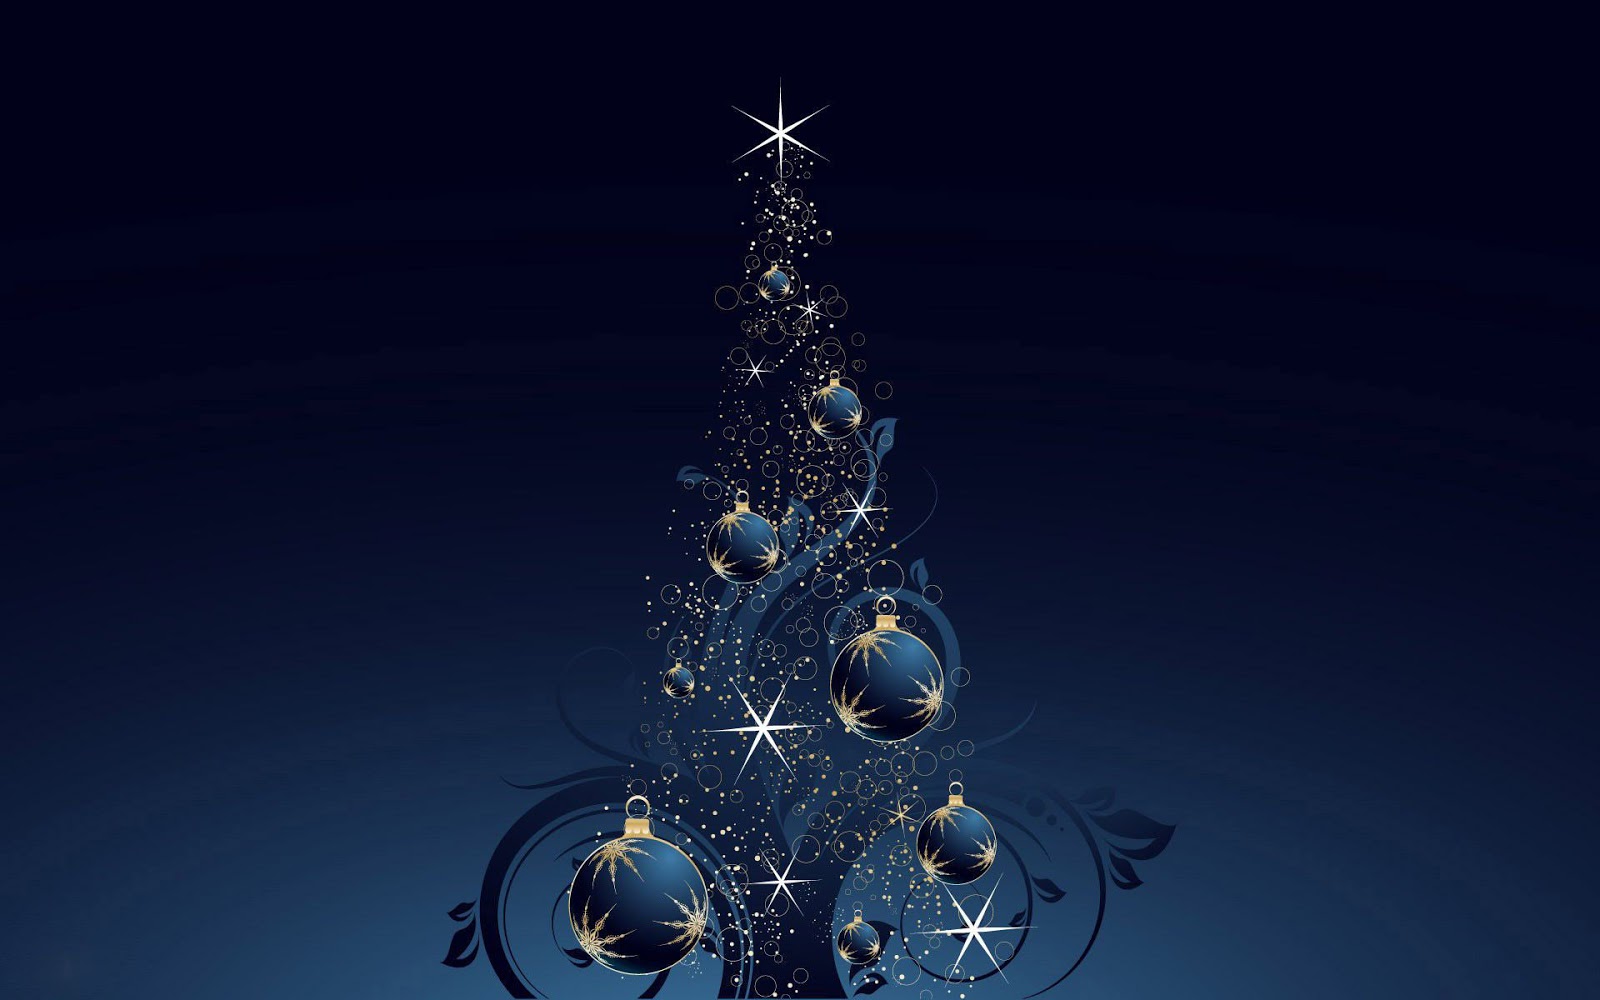 http://3.bp.blogspot.com/-fQ--en_8Q58/UJGZUIJ-S8I/AAAAAAAAIYY/Zku0QdLcE_M/s1600/donkerblauwe-wallpaper-met-een-kerstboom-met-blauwe-kerstballen.jpg